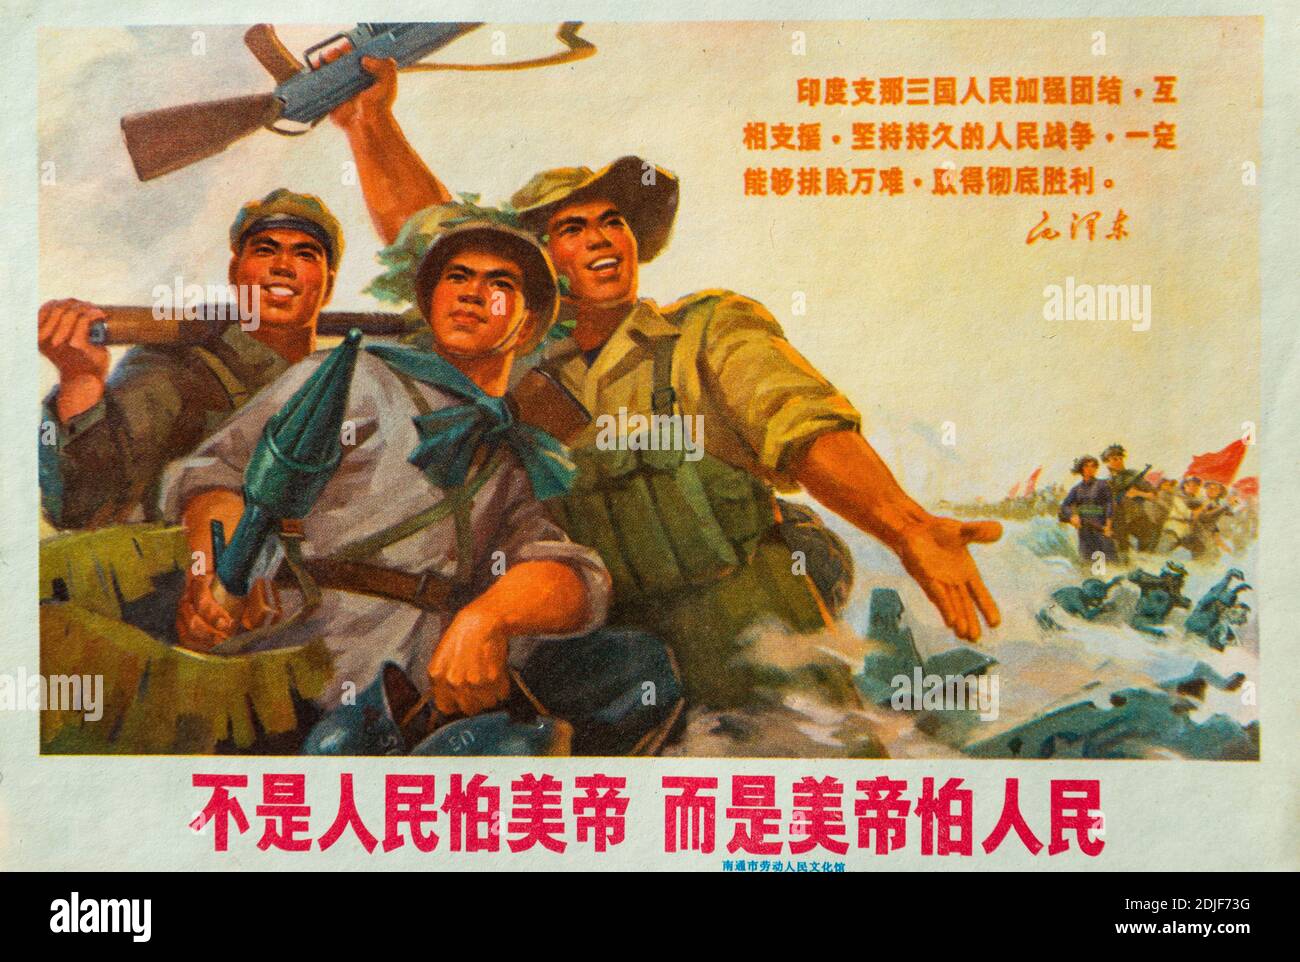 Ein echtes Propagandaplakat während der Kulturrevolution in China. Die chinesischen Schriftzeichen lesen: Es ist nicht so, dass die Menschen Angst vor amerikanischen Impe haben Stockfoto